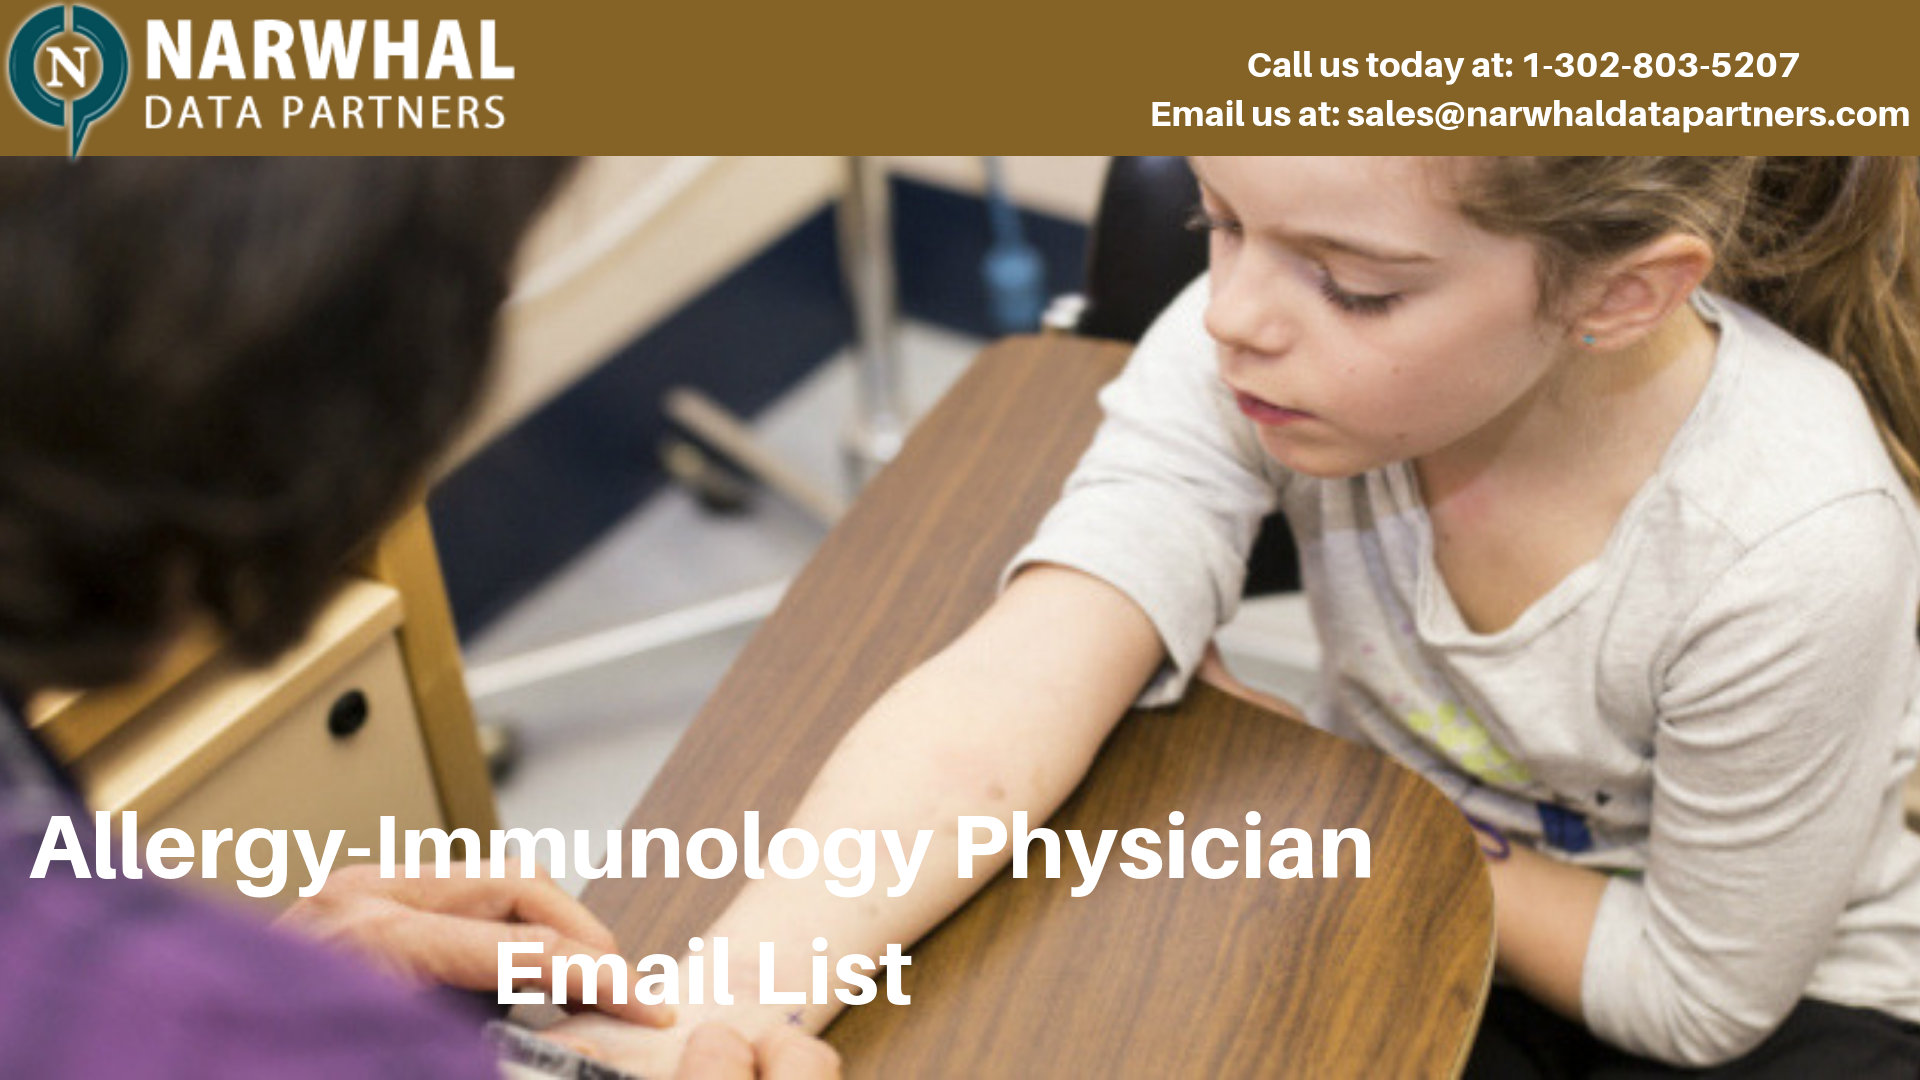 http://narwhaldatapartners.com/allergy-immunology-physician-email-list.html